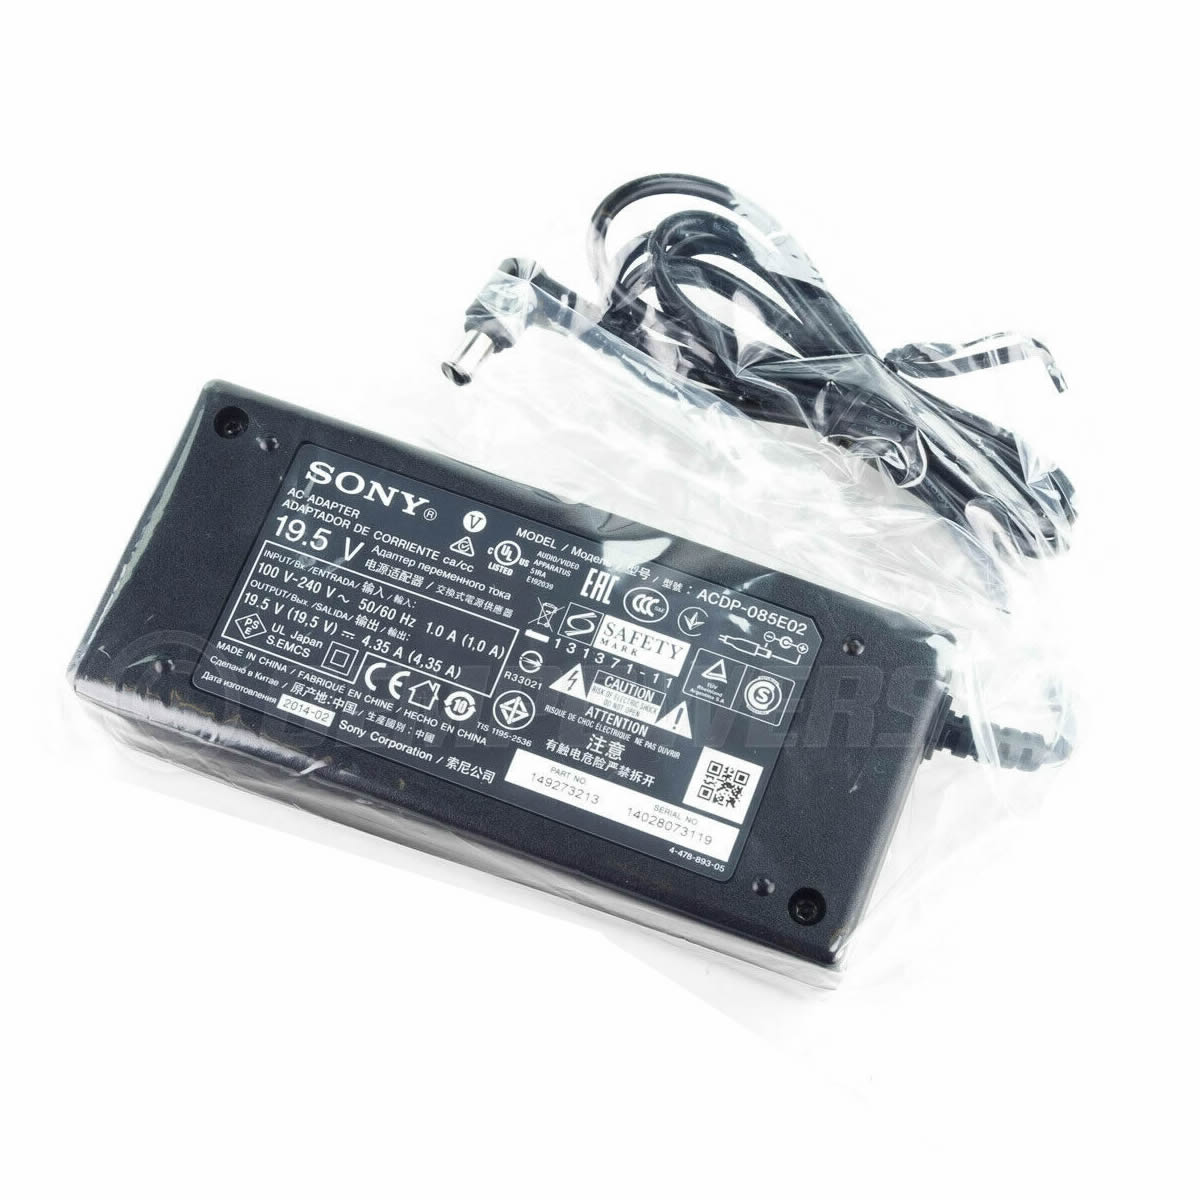 Adaptateur chargeur Sony ACDP-085E01 ACDP-085E02 19.5V 4.35A 85W alimentation originale pour Sony KDL-32W705B KDL-48W585B KDL-48W605B KDL-50W829B séries